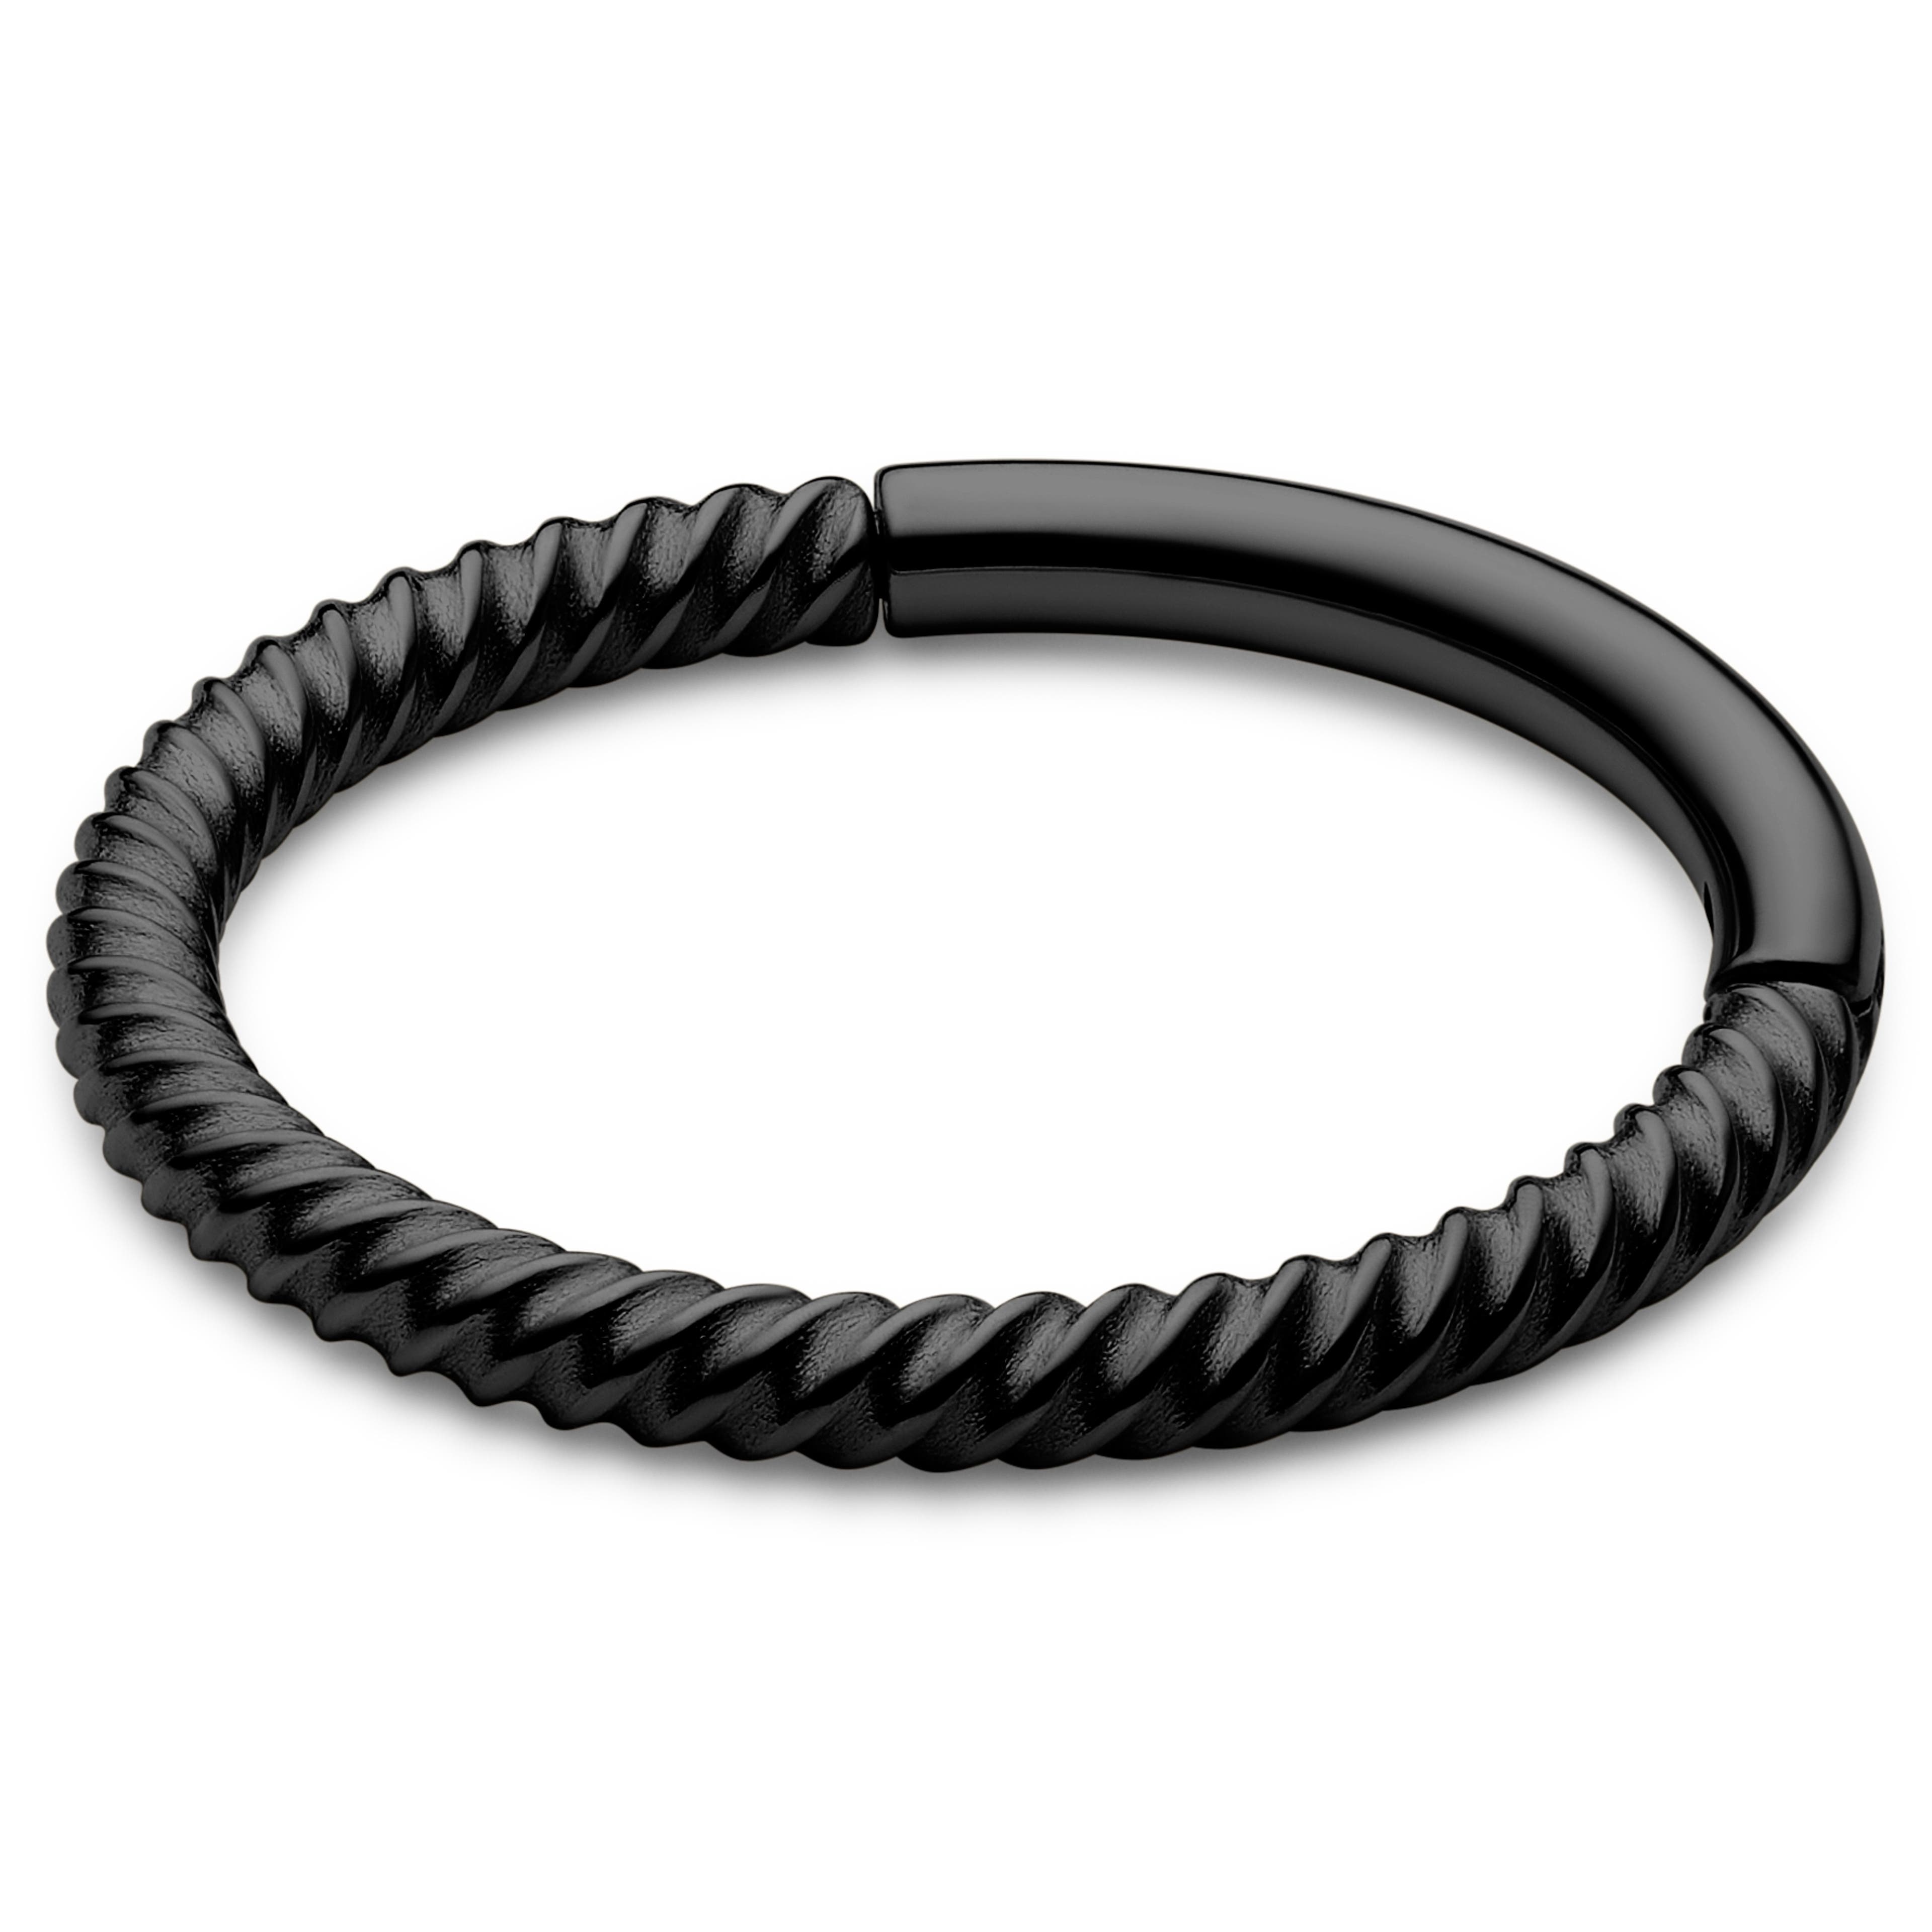 Piercing aro estilo cable de acero quirúrgico negro de 10 mm 